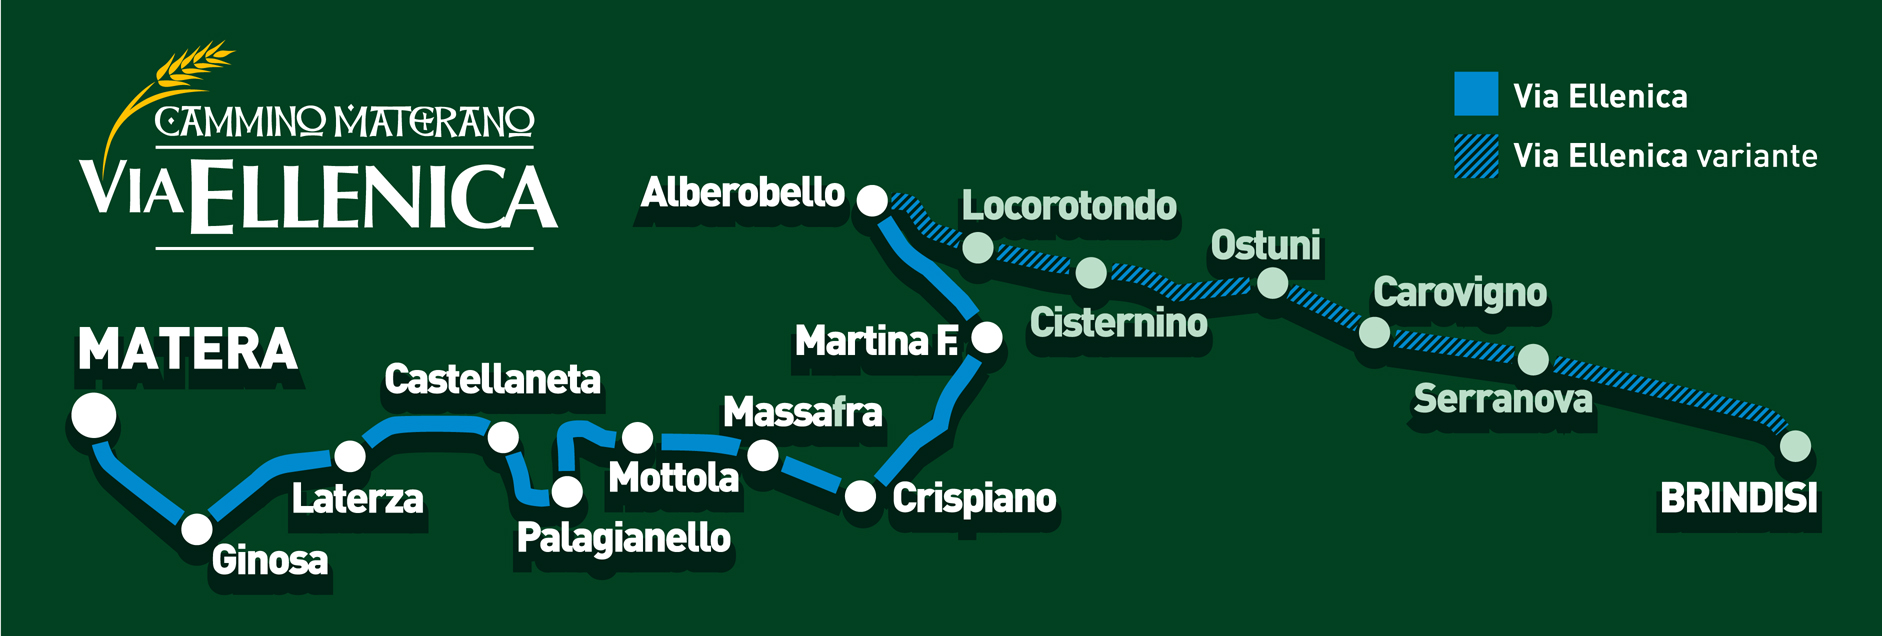 Mappa Cammino Materano